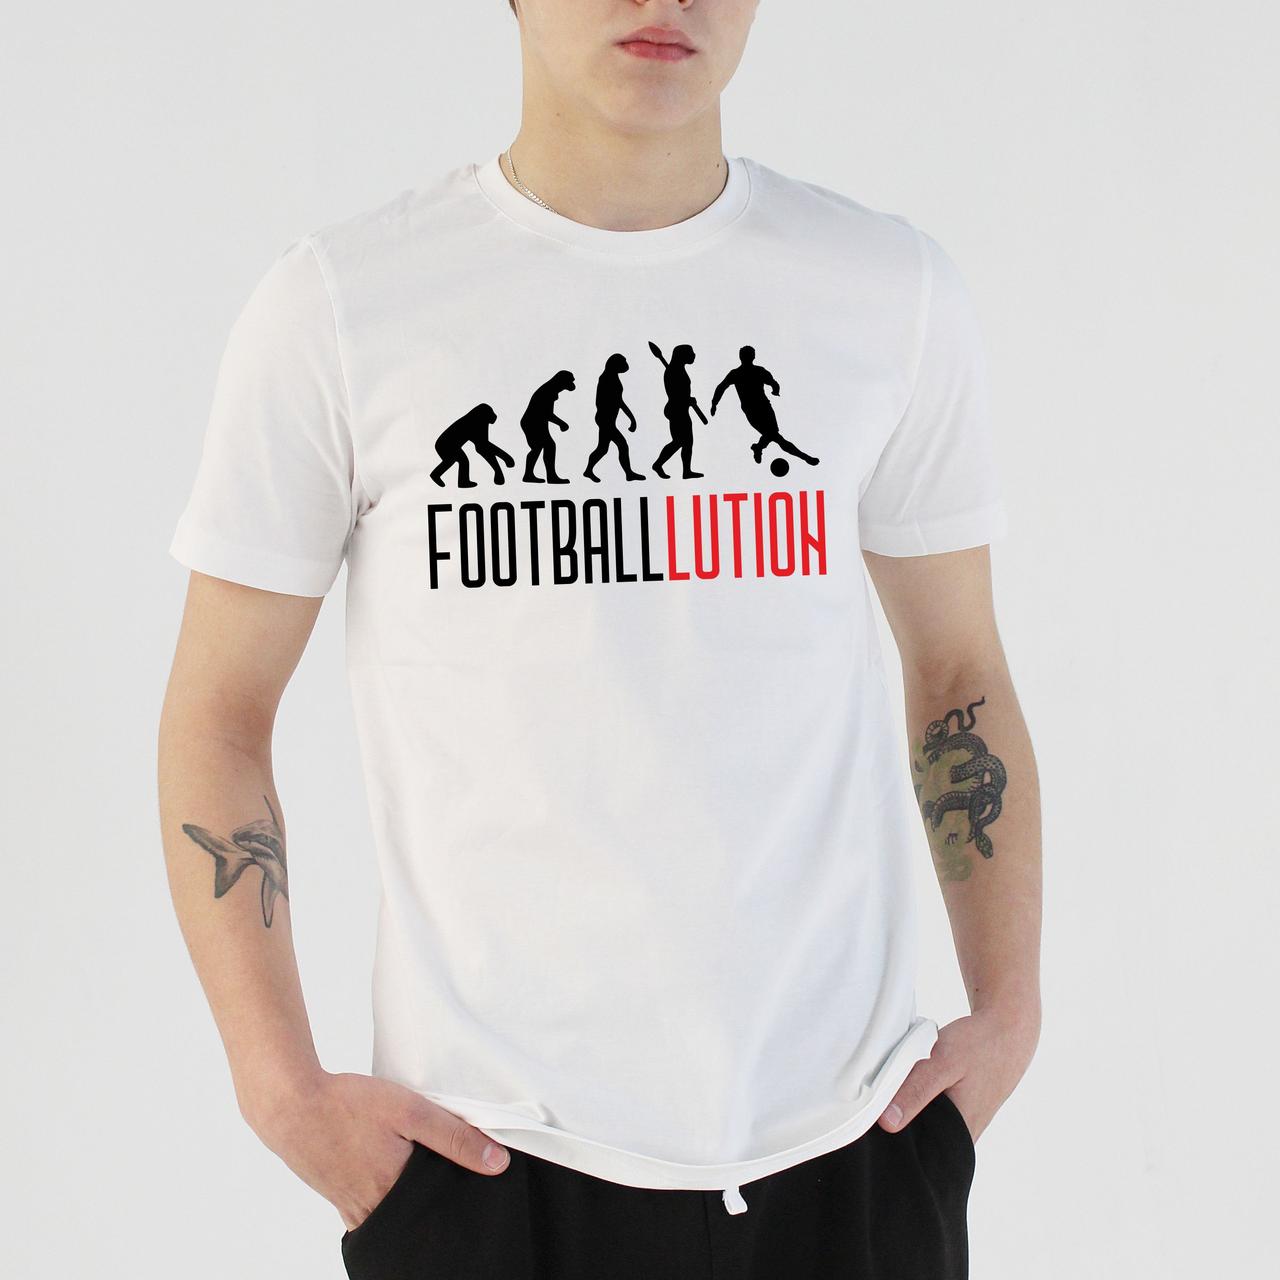 Футболка для поклонников футбола. Эволюция футболиста